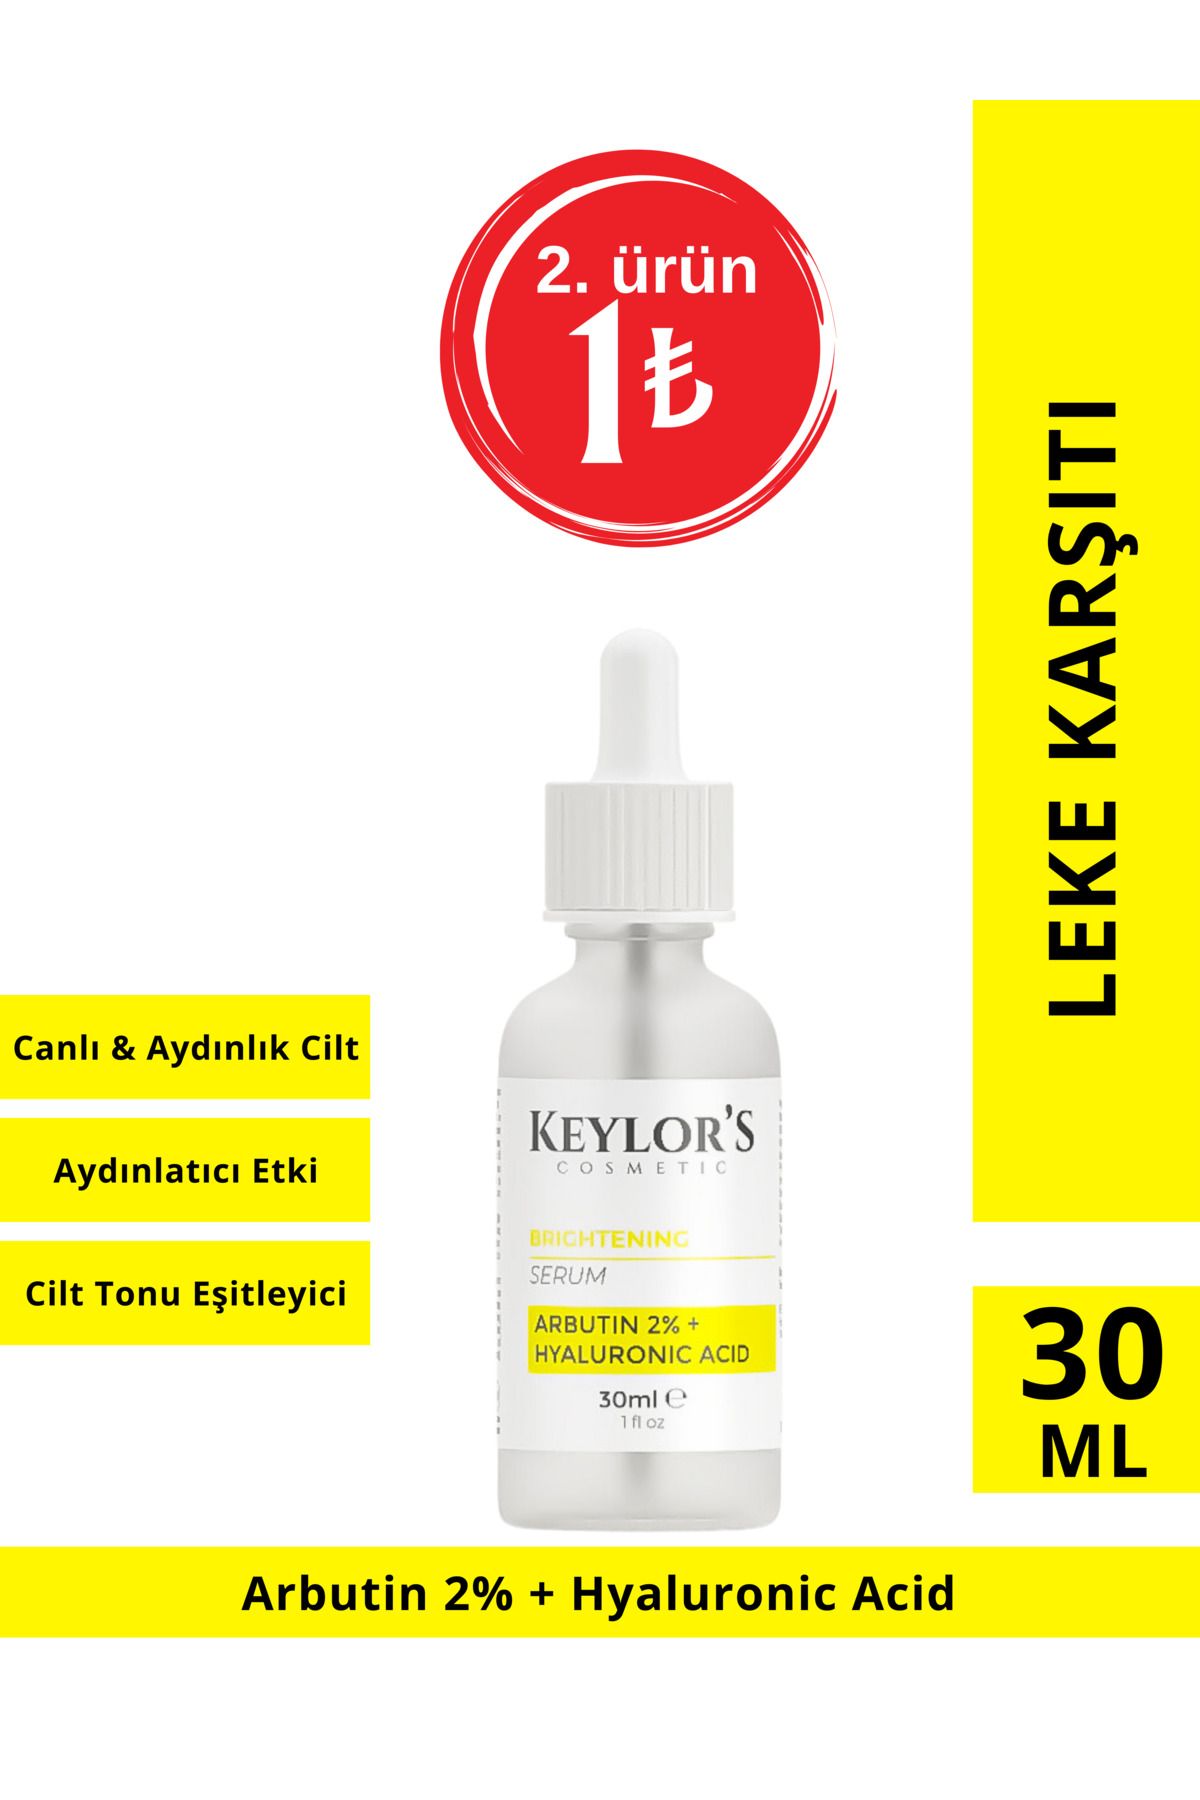 Keylor's Cosmetic Leke Karşıtı Arbutin Cilt Bakım Serumu 30 ml ( Arbutin %2 Hyalüronik Asit )